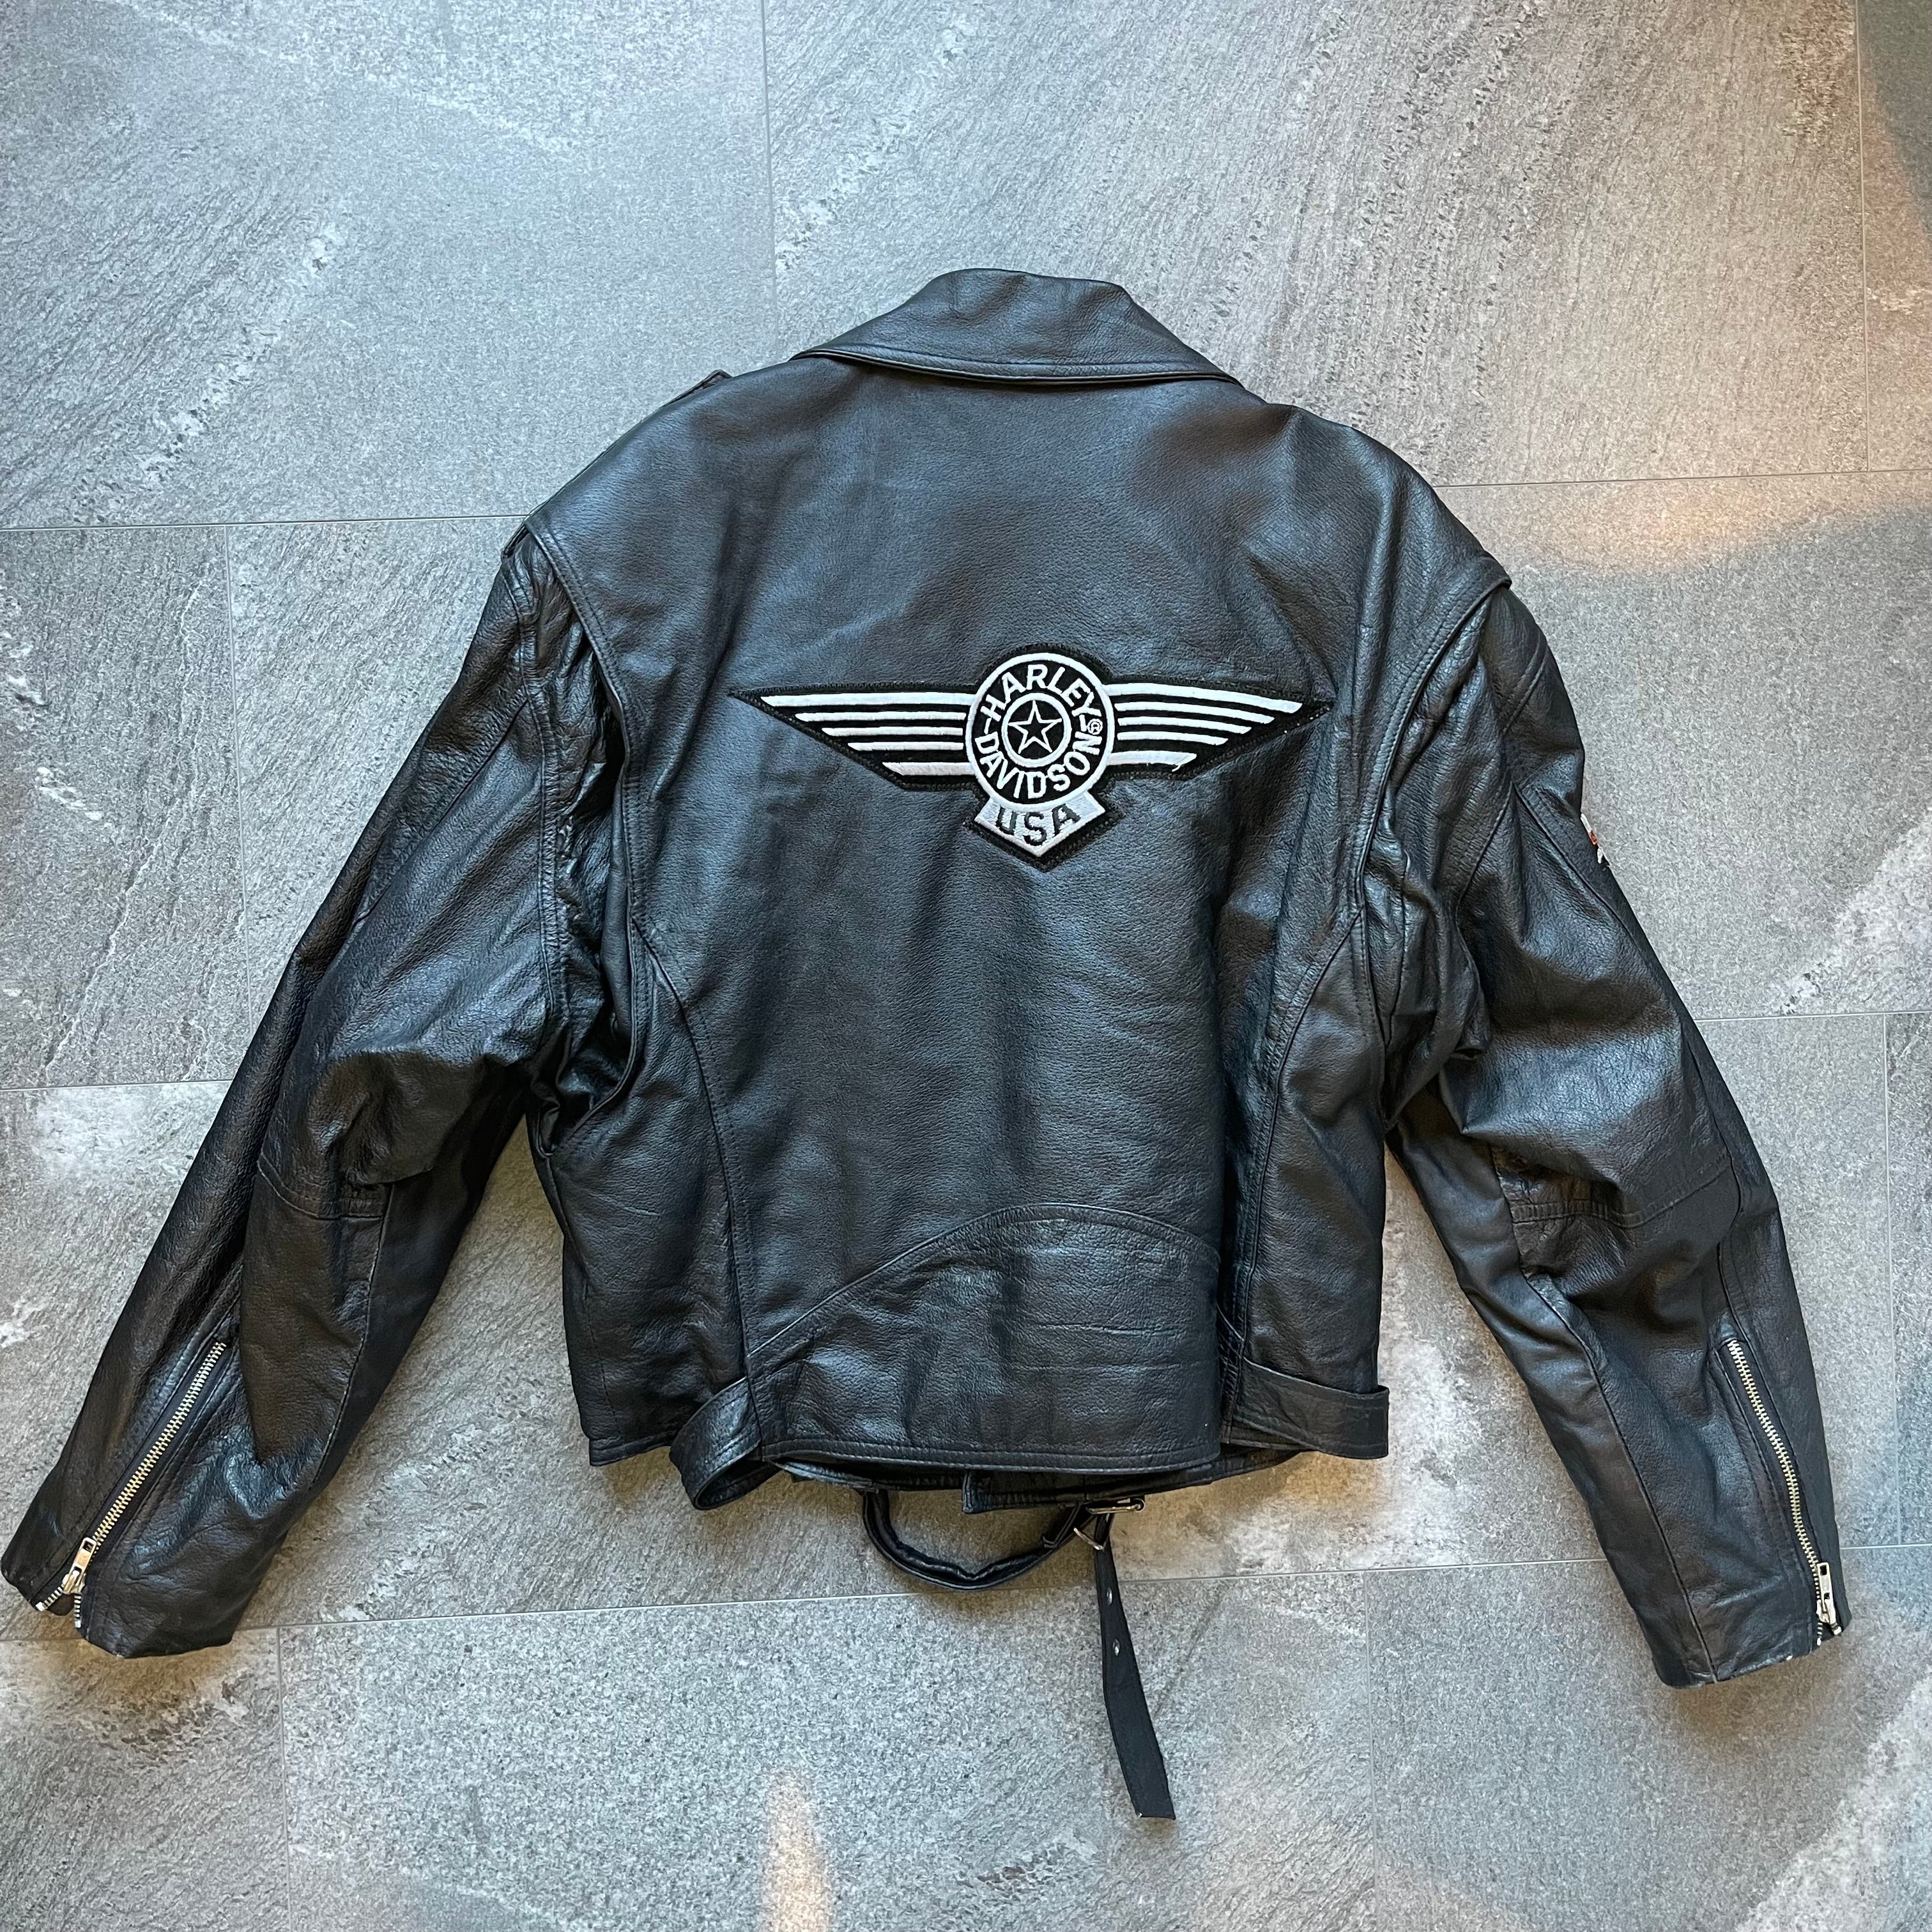 Harley Davidson Leather Biker Jacket